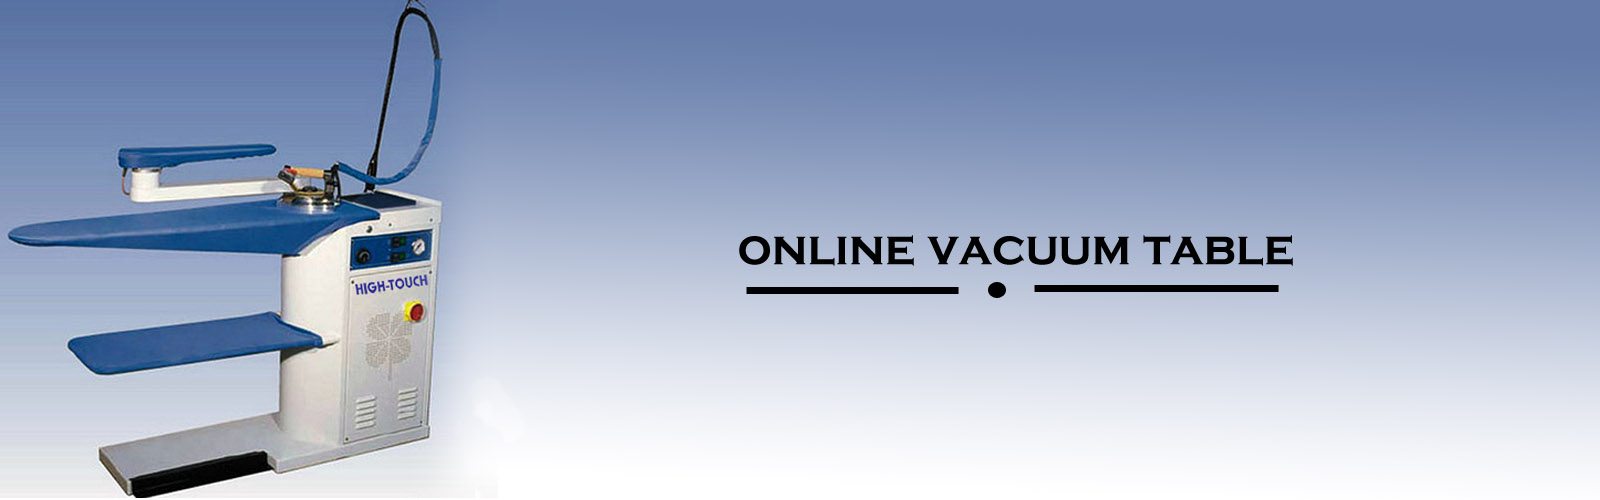 Online vacuum table